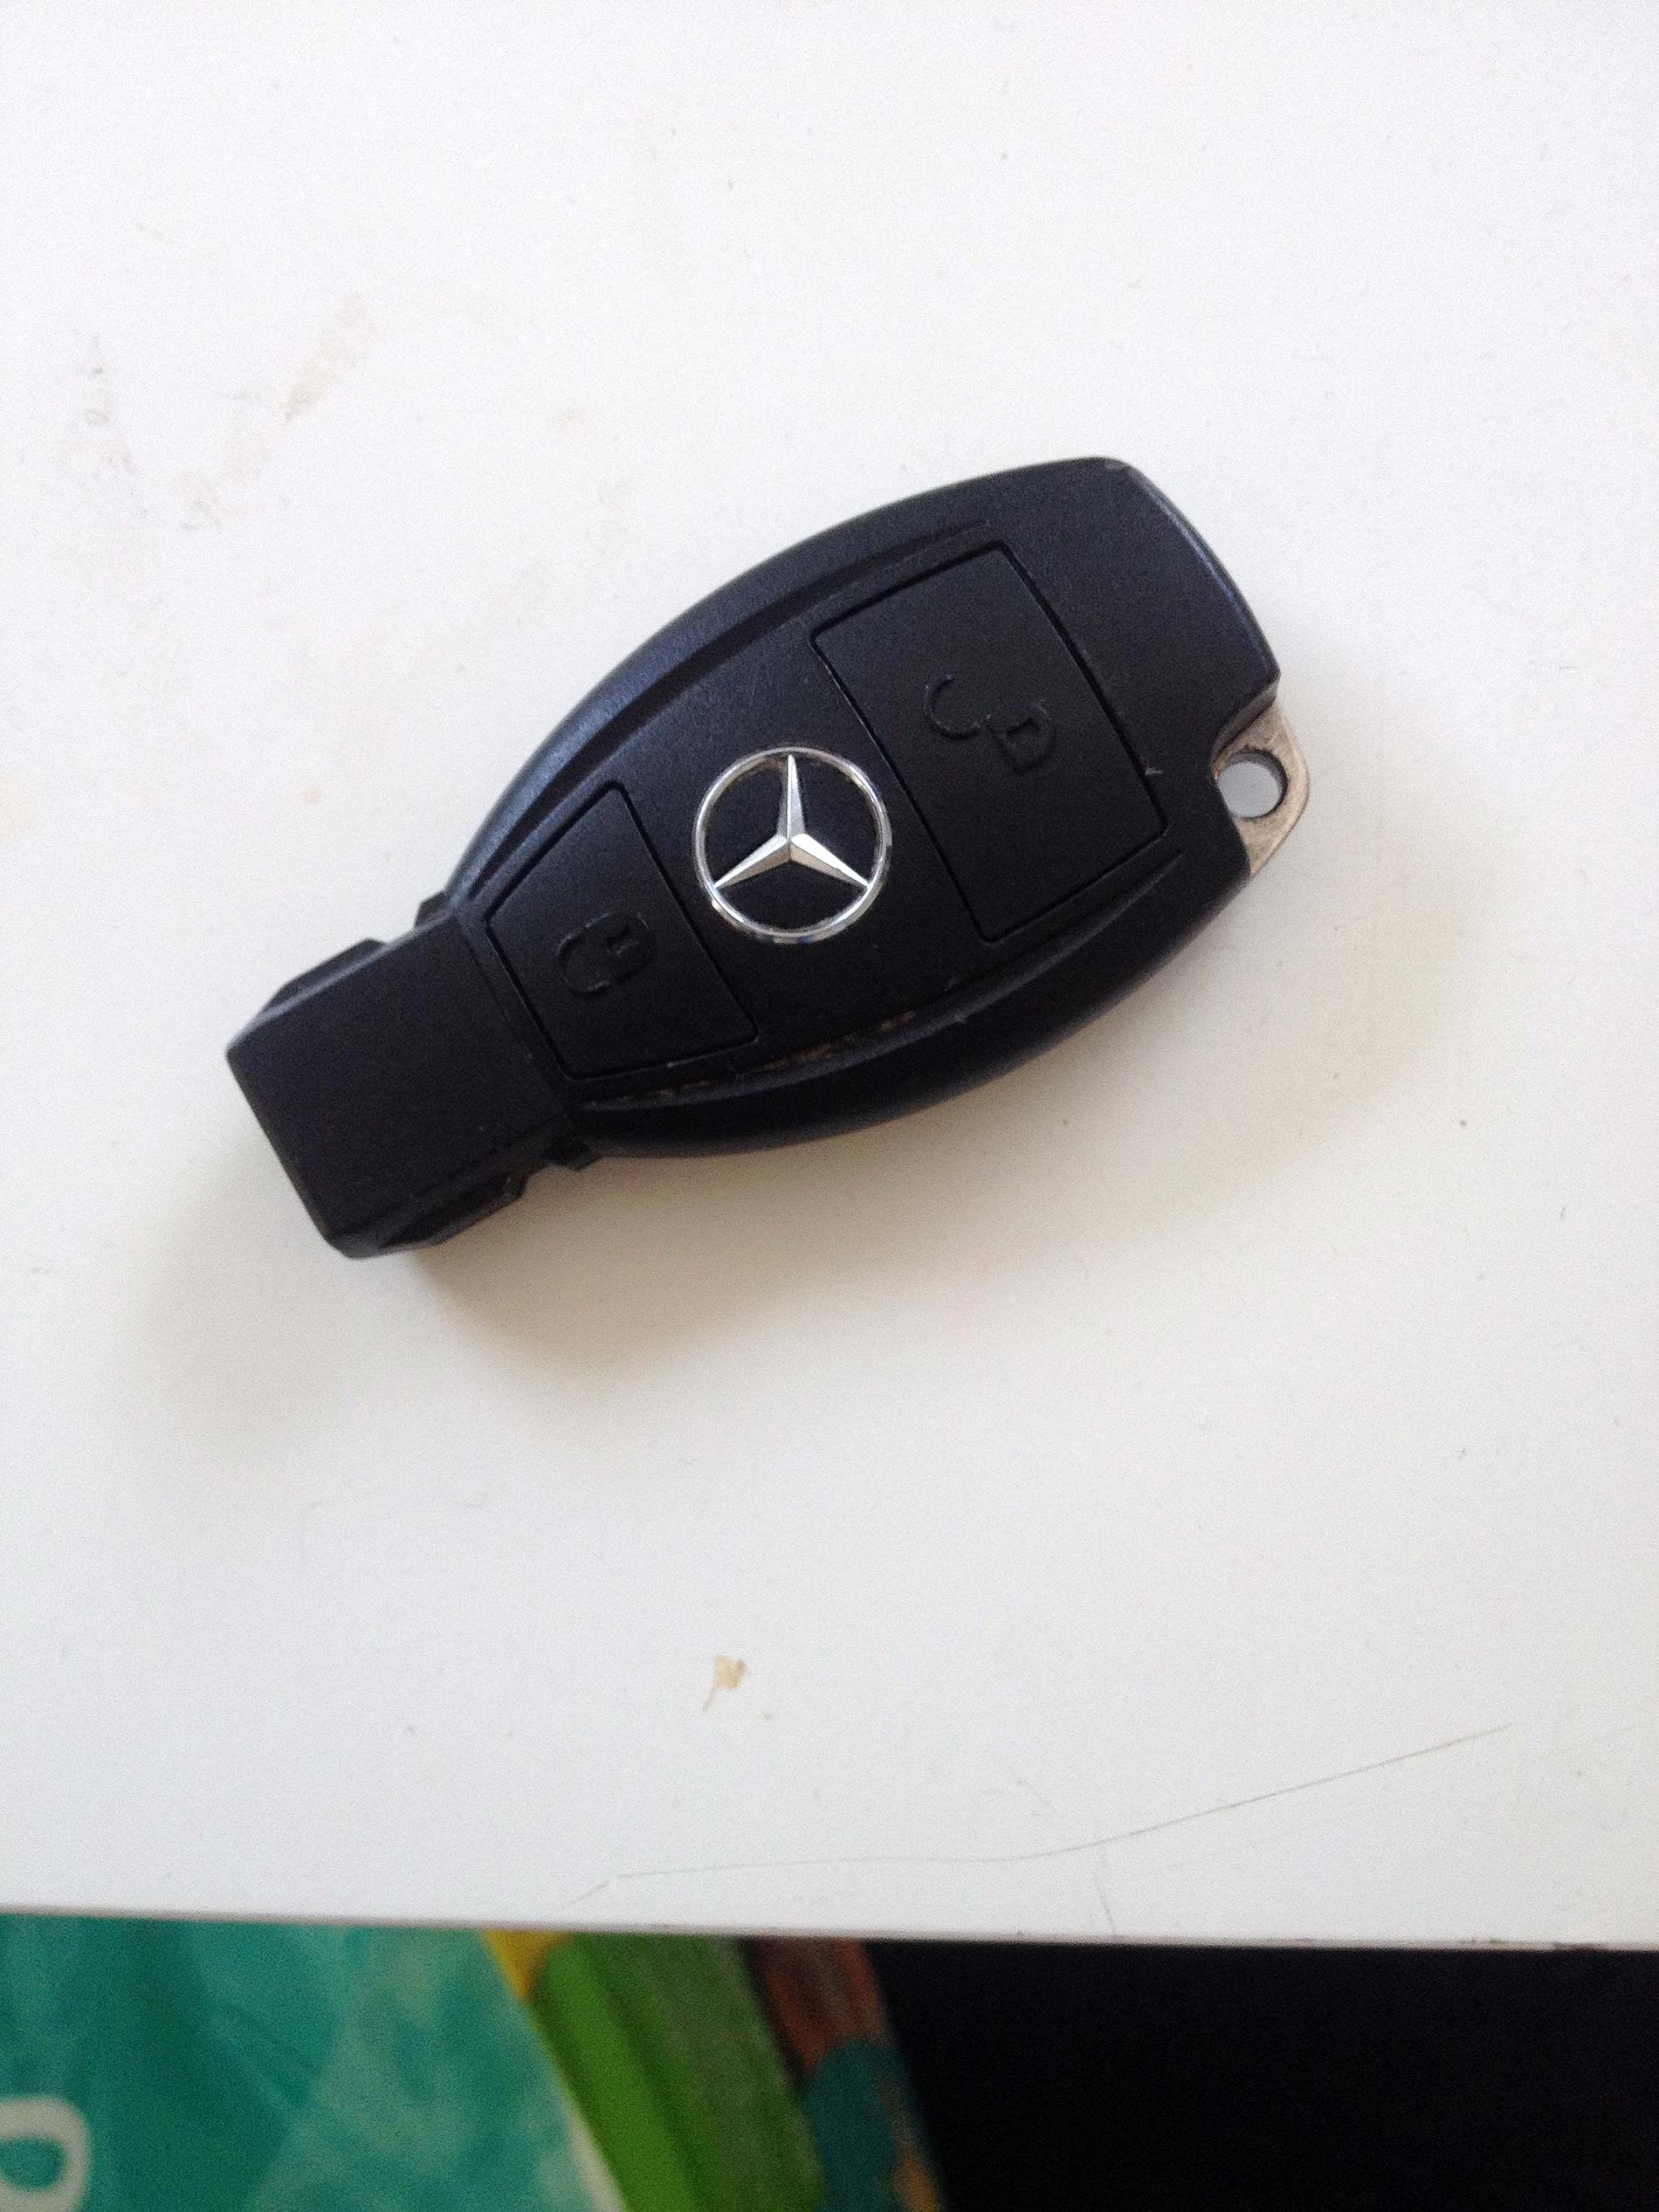 Nyckel till en Mercedes.